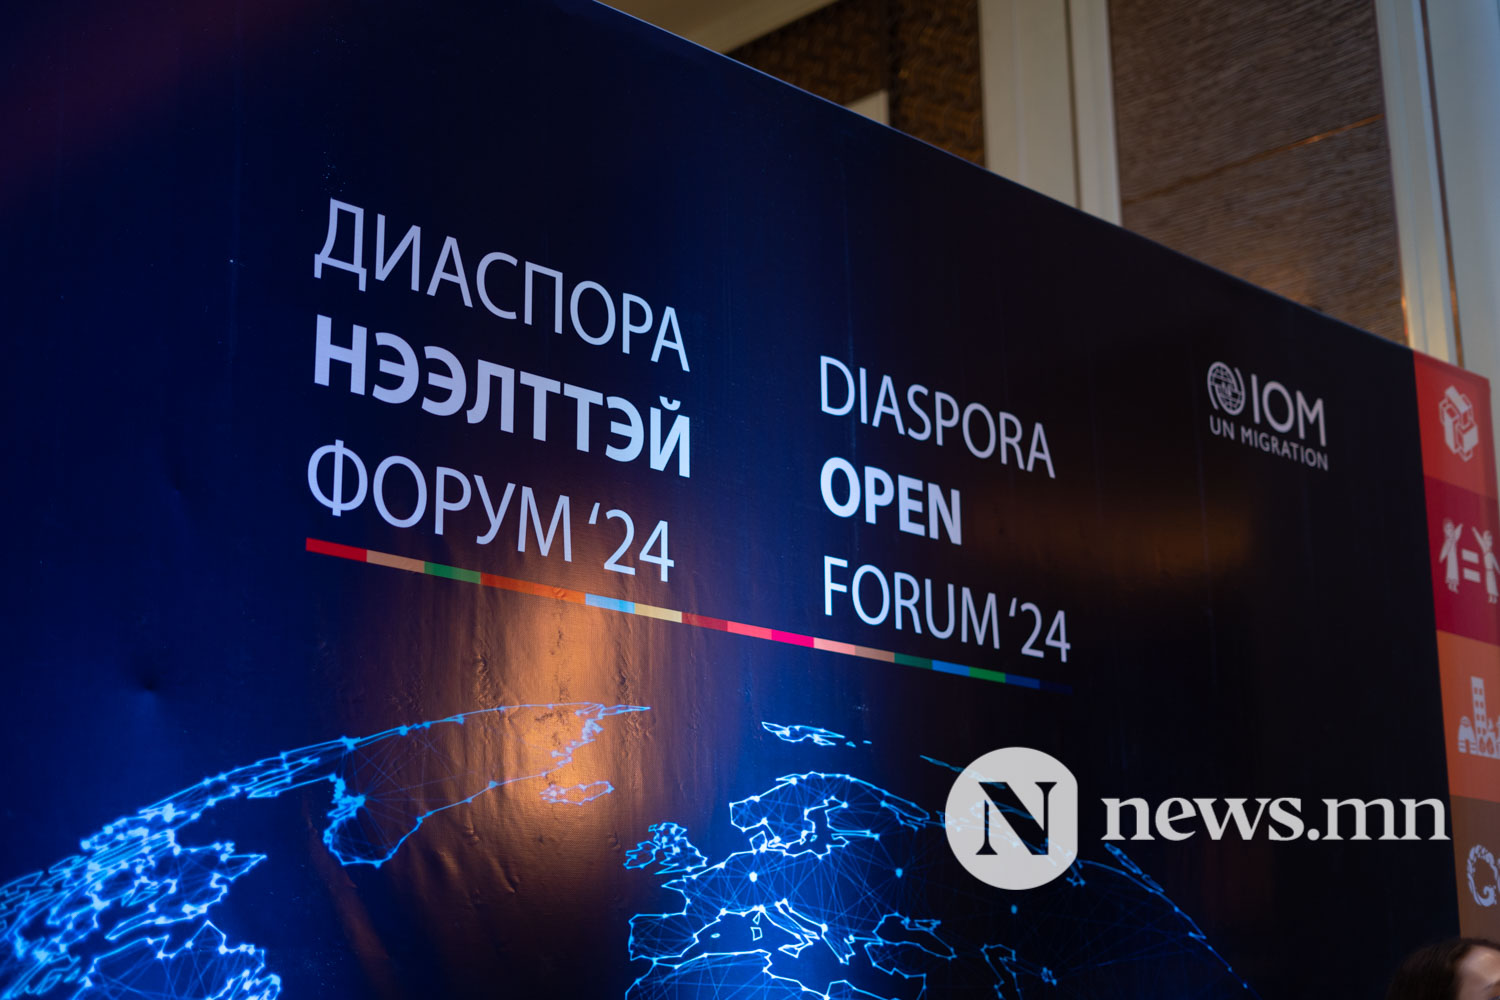 diaspora open forum-2